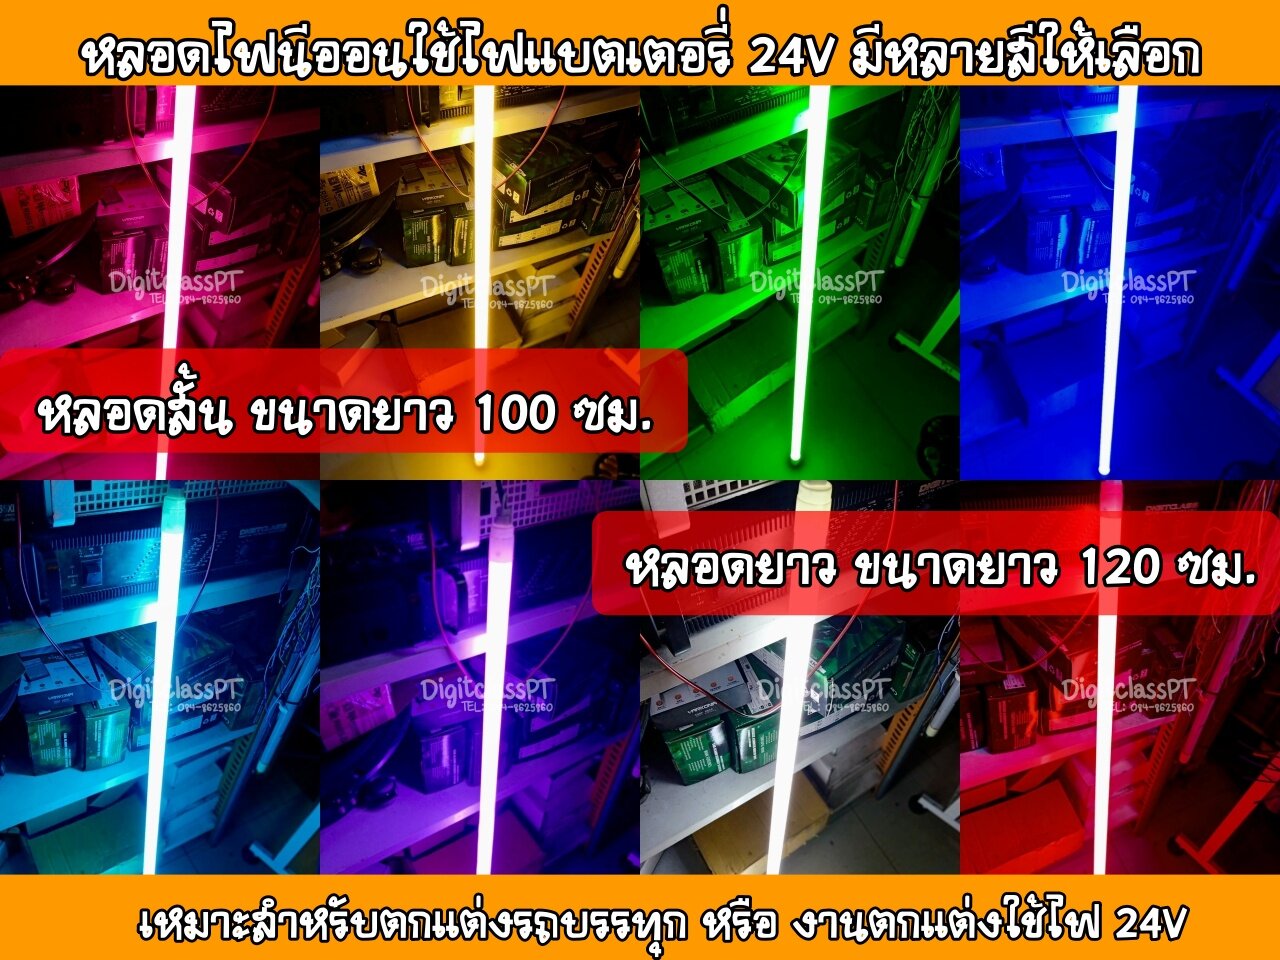 หลอดไฟแต่งรถบรรทุก 24V หลอดยาว 120 ซม.หลอดไฟ LED 24V หลอดนีออนสีขั้วกันน้ำ18W(มีให้เลือก 8 สี)ติดตั้งง่ายใช้ไฟ 24Vแสงสว่างผลิตในประเทศไทย